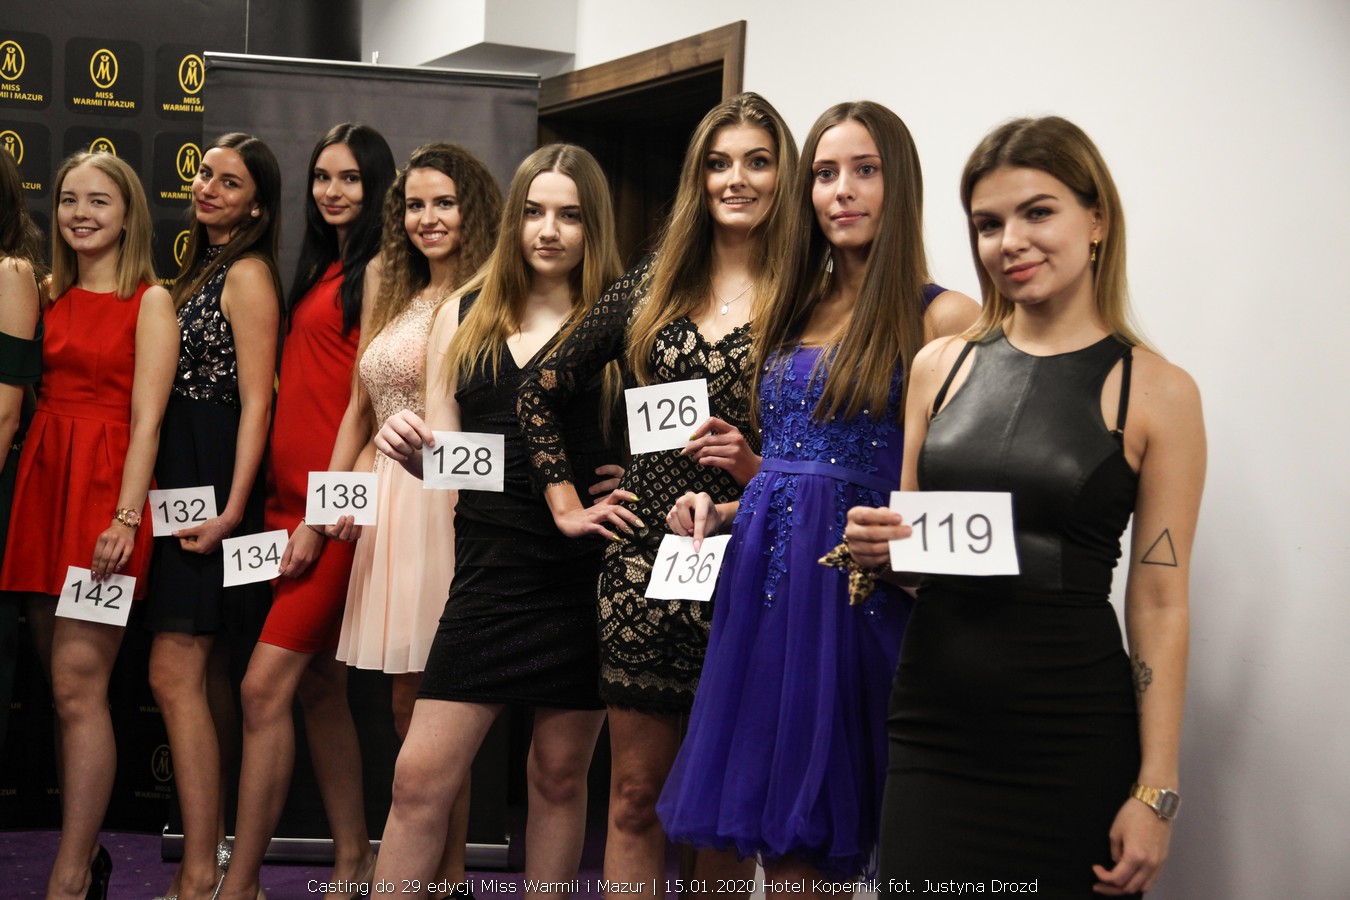 Miss Warmii i Mazur casting, Pierwszy casting do 29 edycji Miss Warmii i Mazur za nami, Miss Warmii i Mazur, Miss Warmii i Mazur